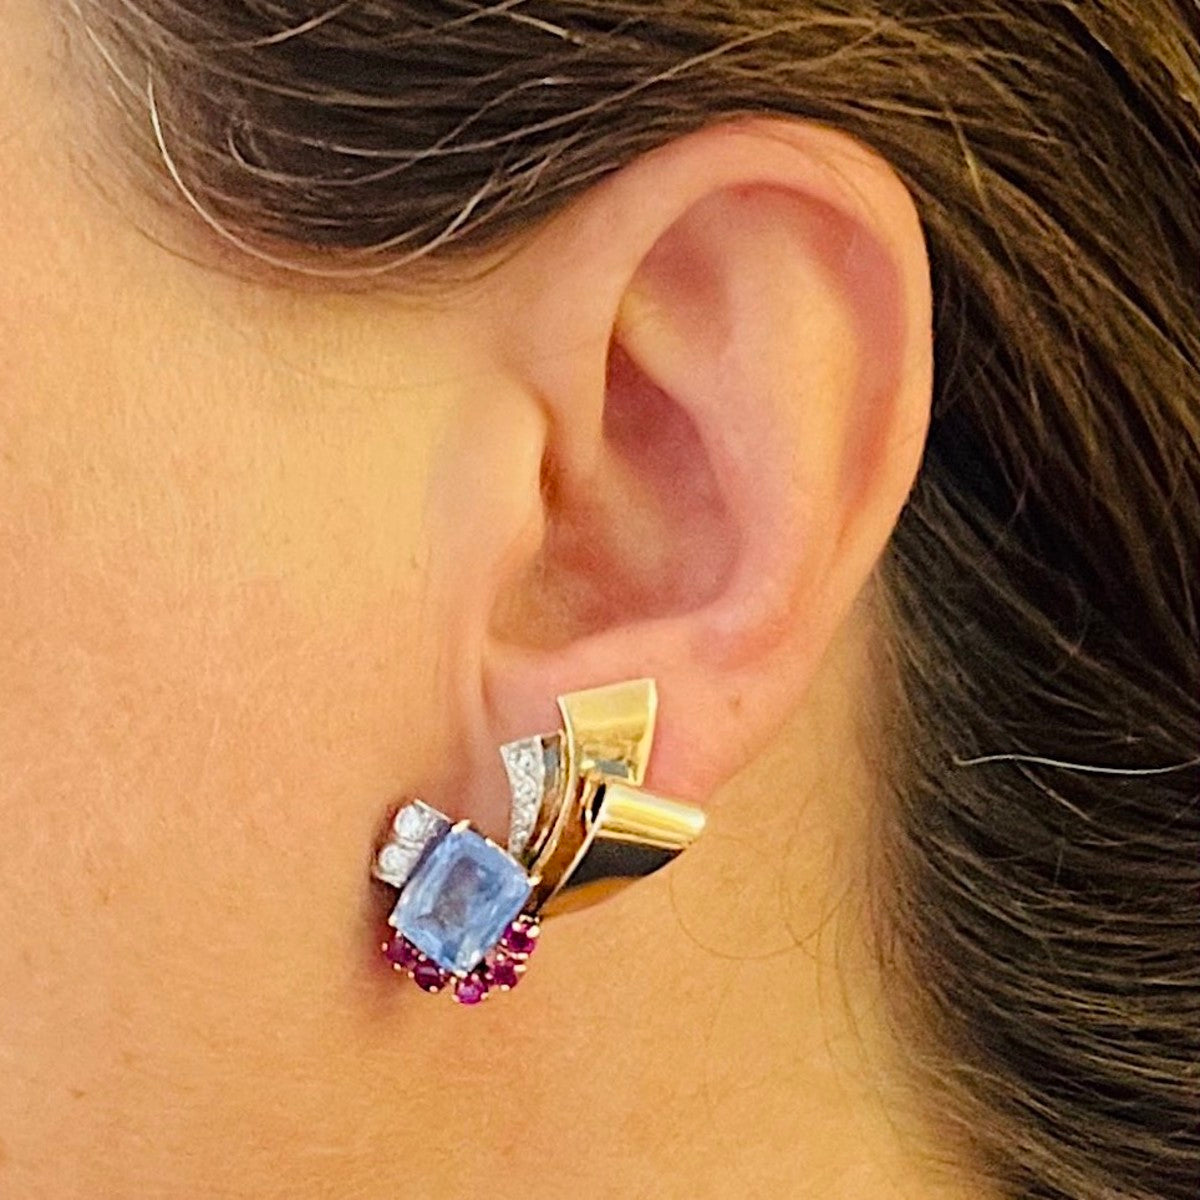 1950s 14KT Yellow Gold Sapphire, Diamond & Ruby Earrings on ear